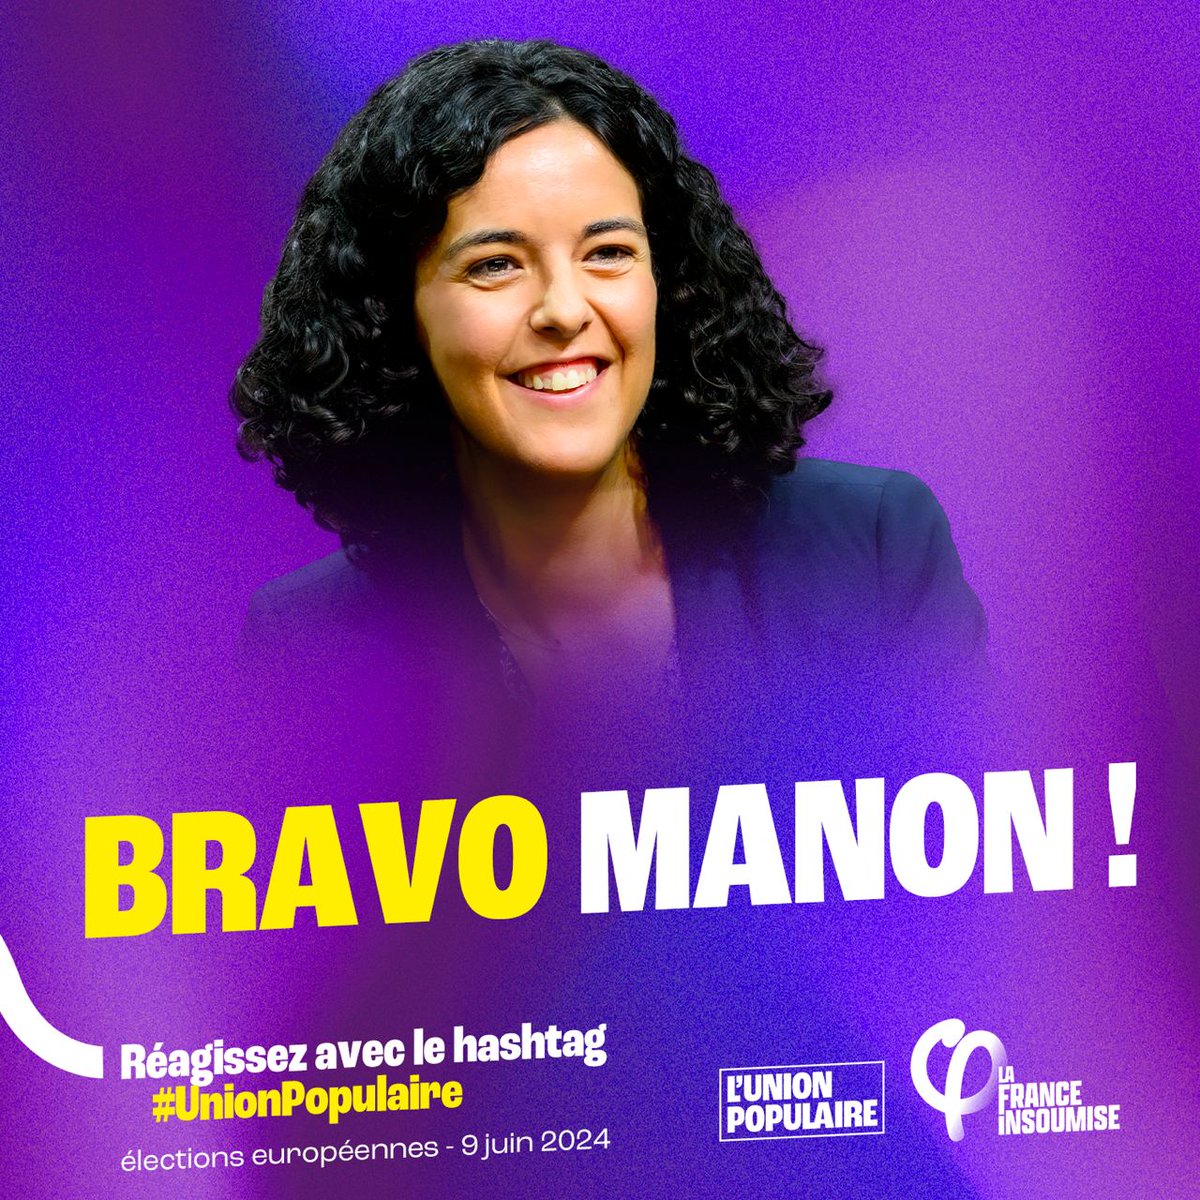 Bravo à Manon Aubry qui a survolé le débat face aux autres têtes de liste. #LeGrandJury #UnionPopulaire